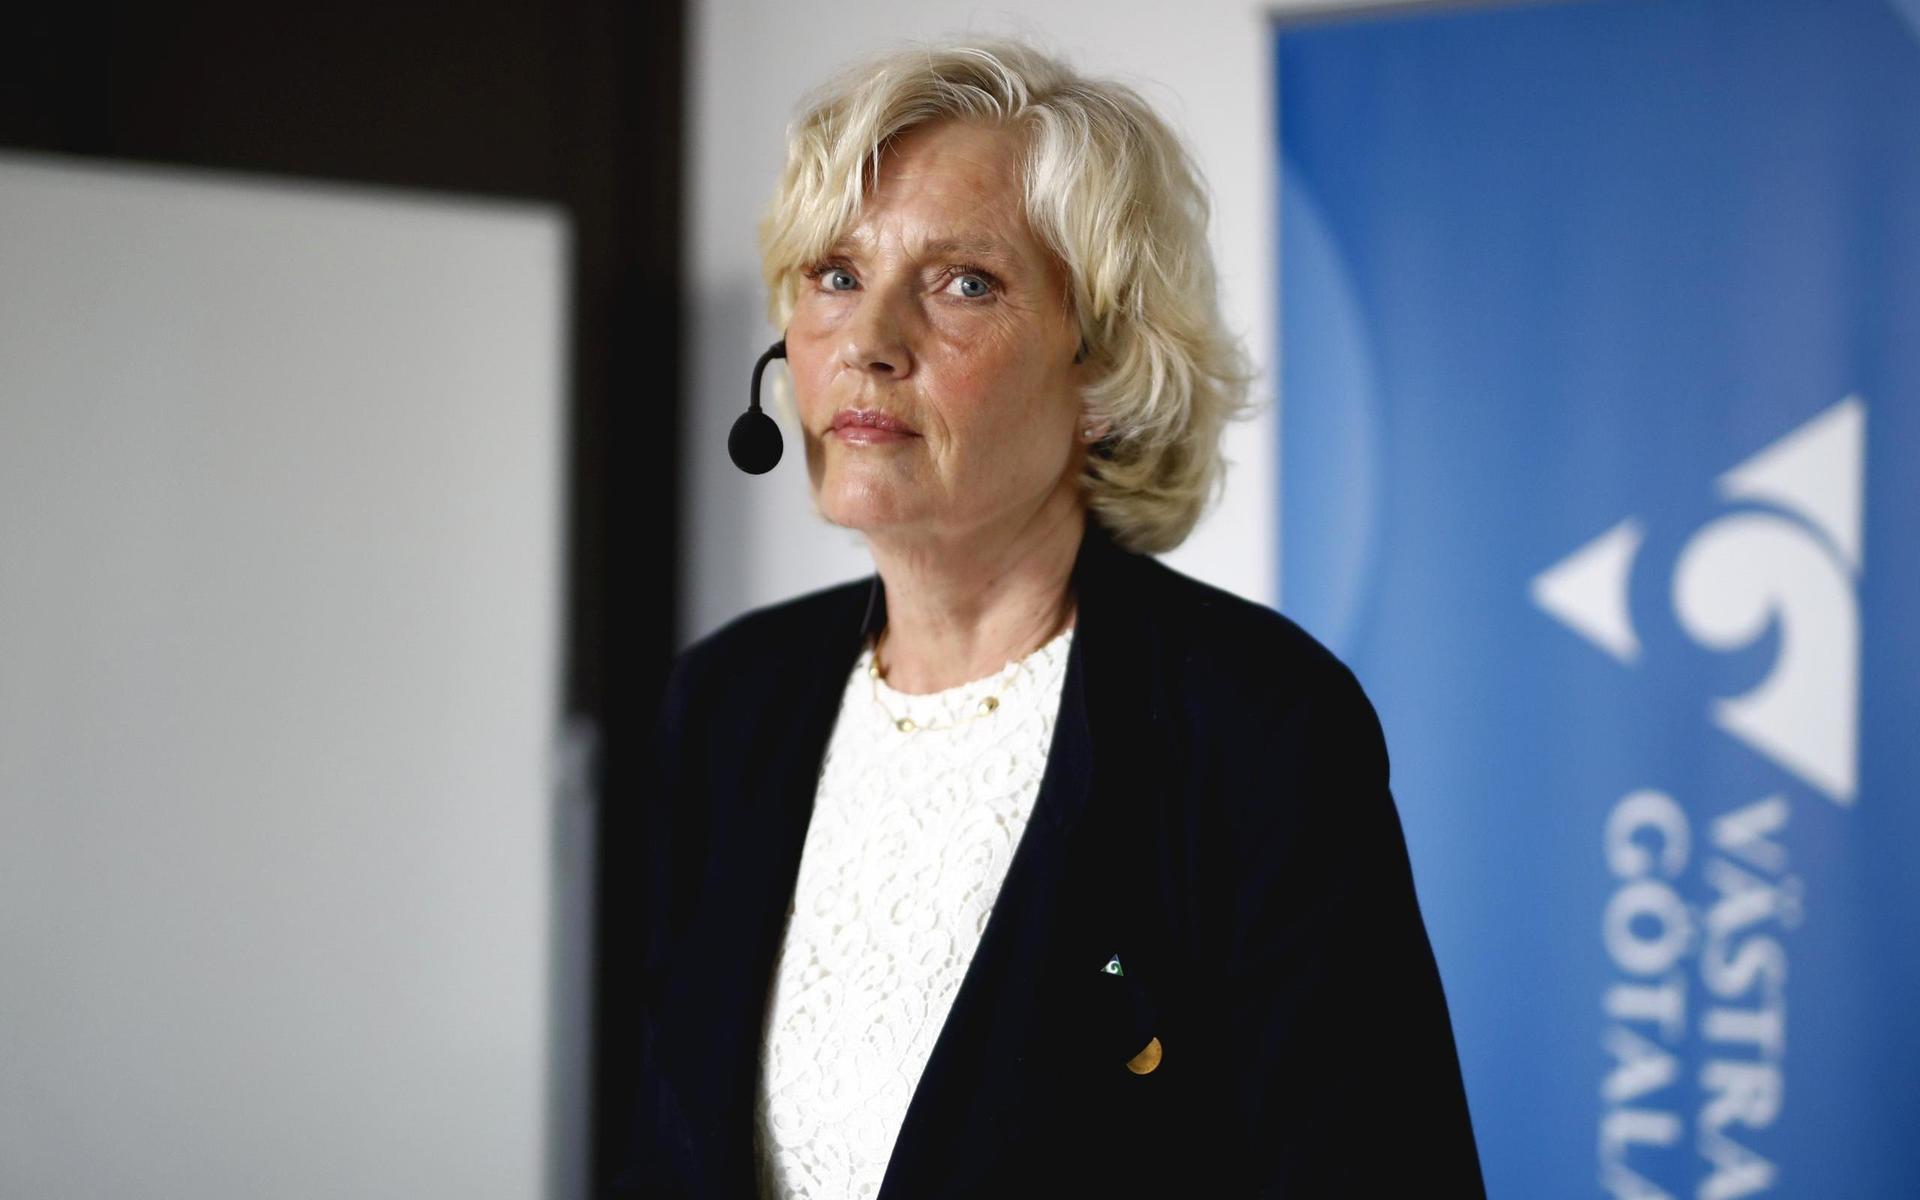 Hälso- och sjukvårdsdirektör Ann Söderström är orolig för en eventuell tredje våg: ”Vi hade ju önskat att vi hade haft mer vaccin, så att det inte bara var restriktioner utan att vi också kunnat skydda fler på det viset.”